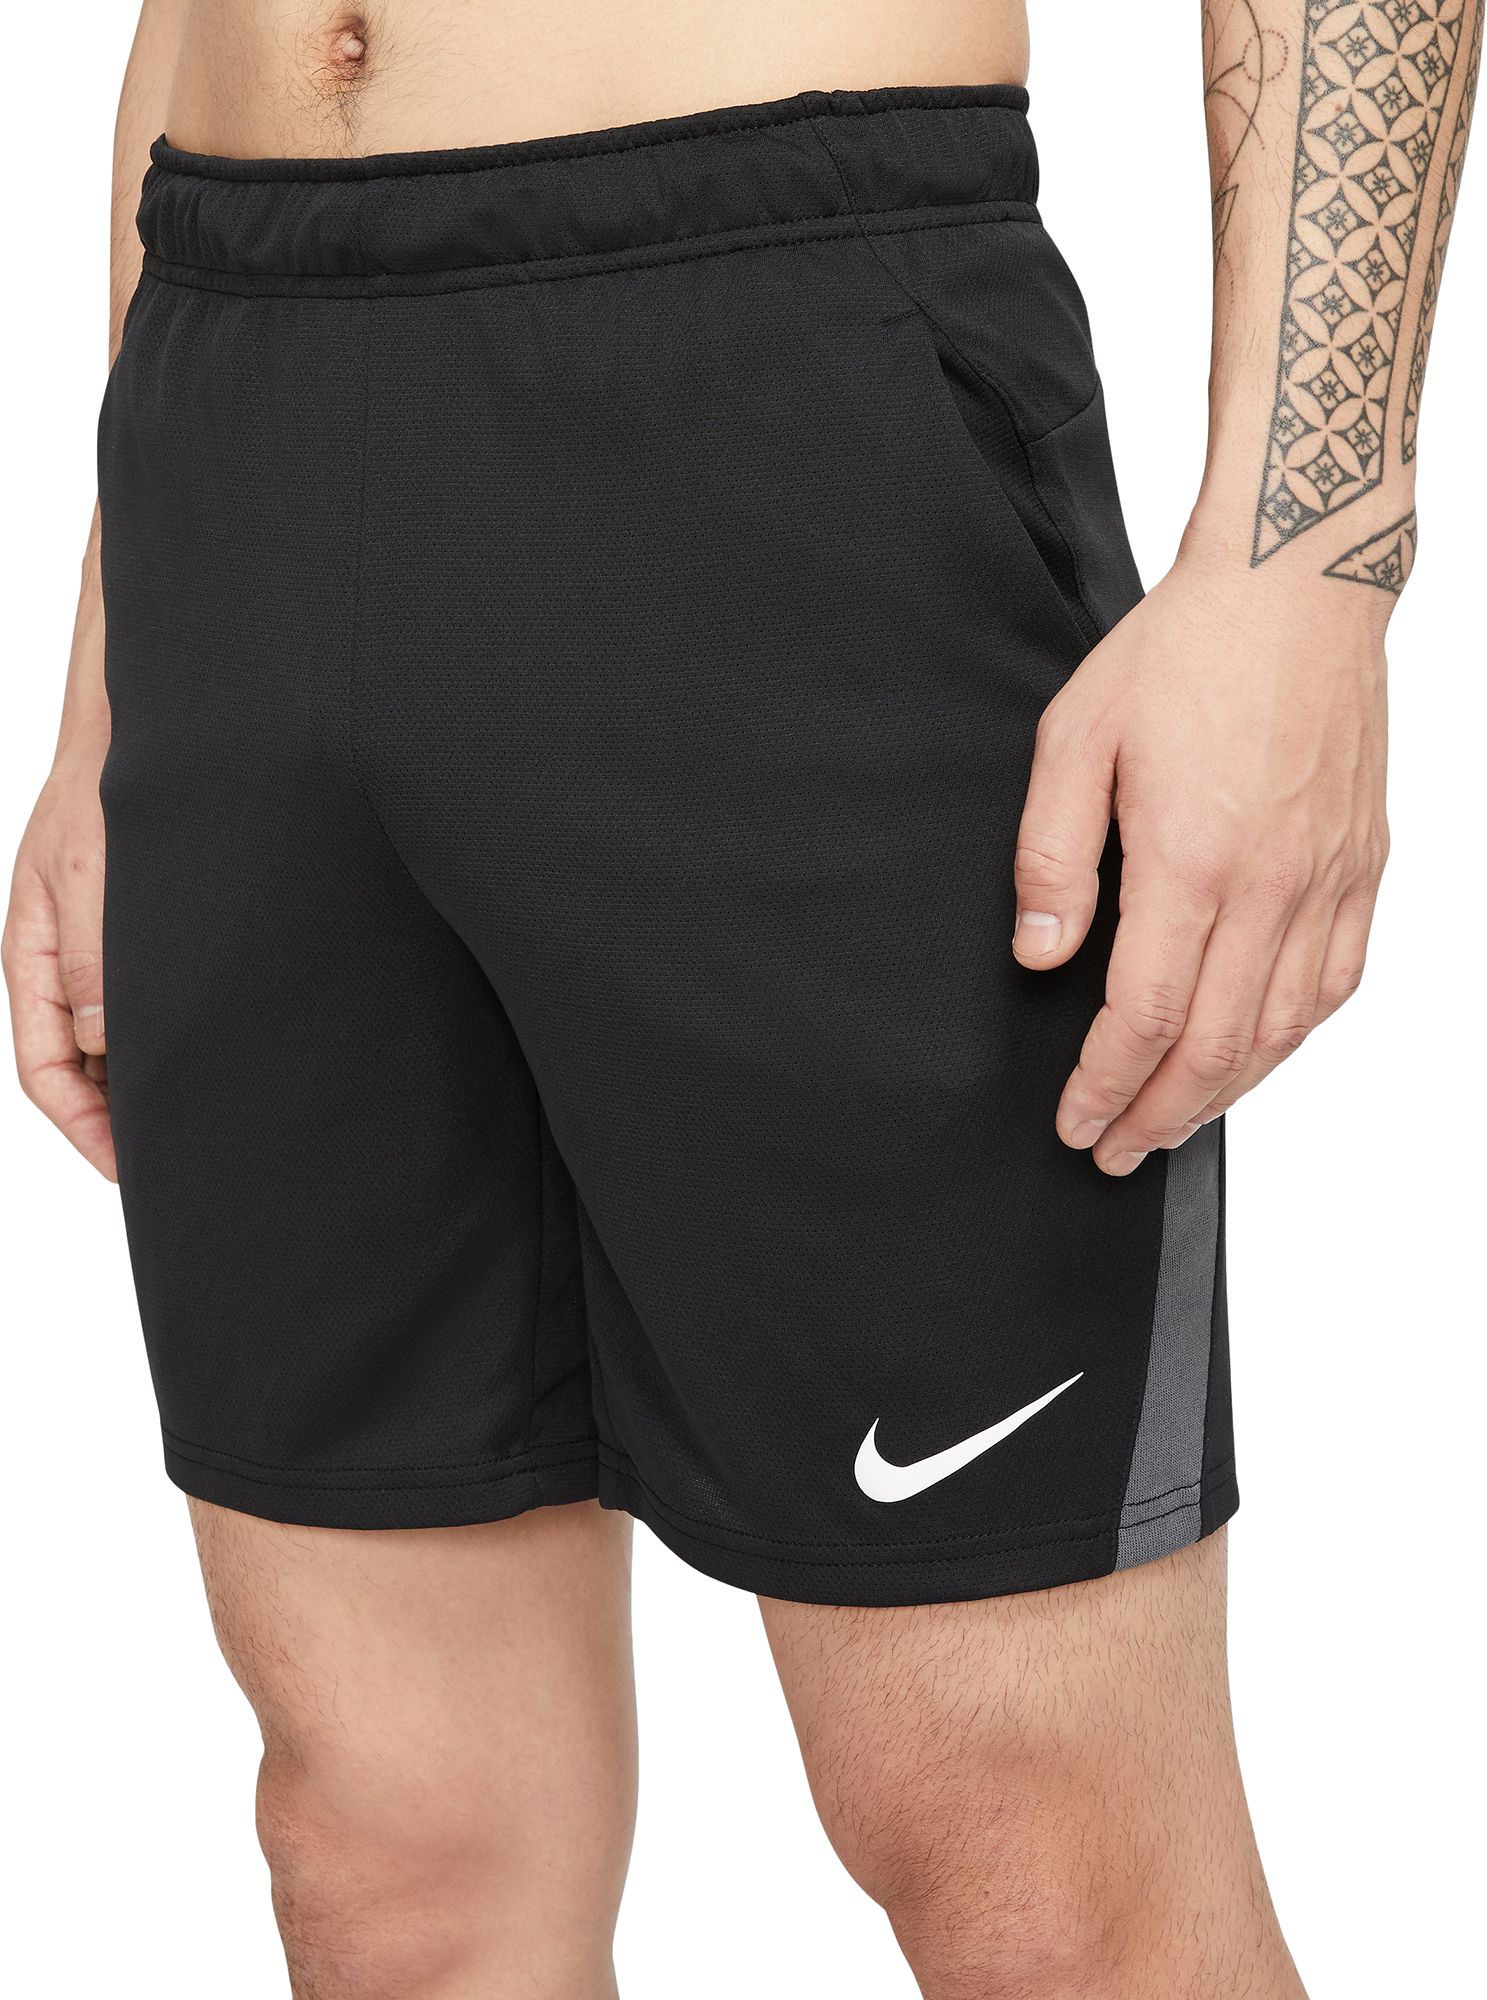 nike grey training shorts